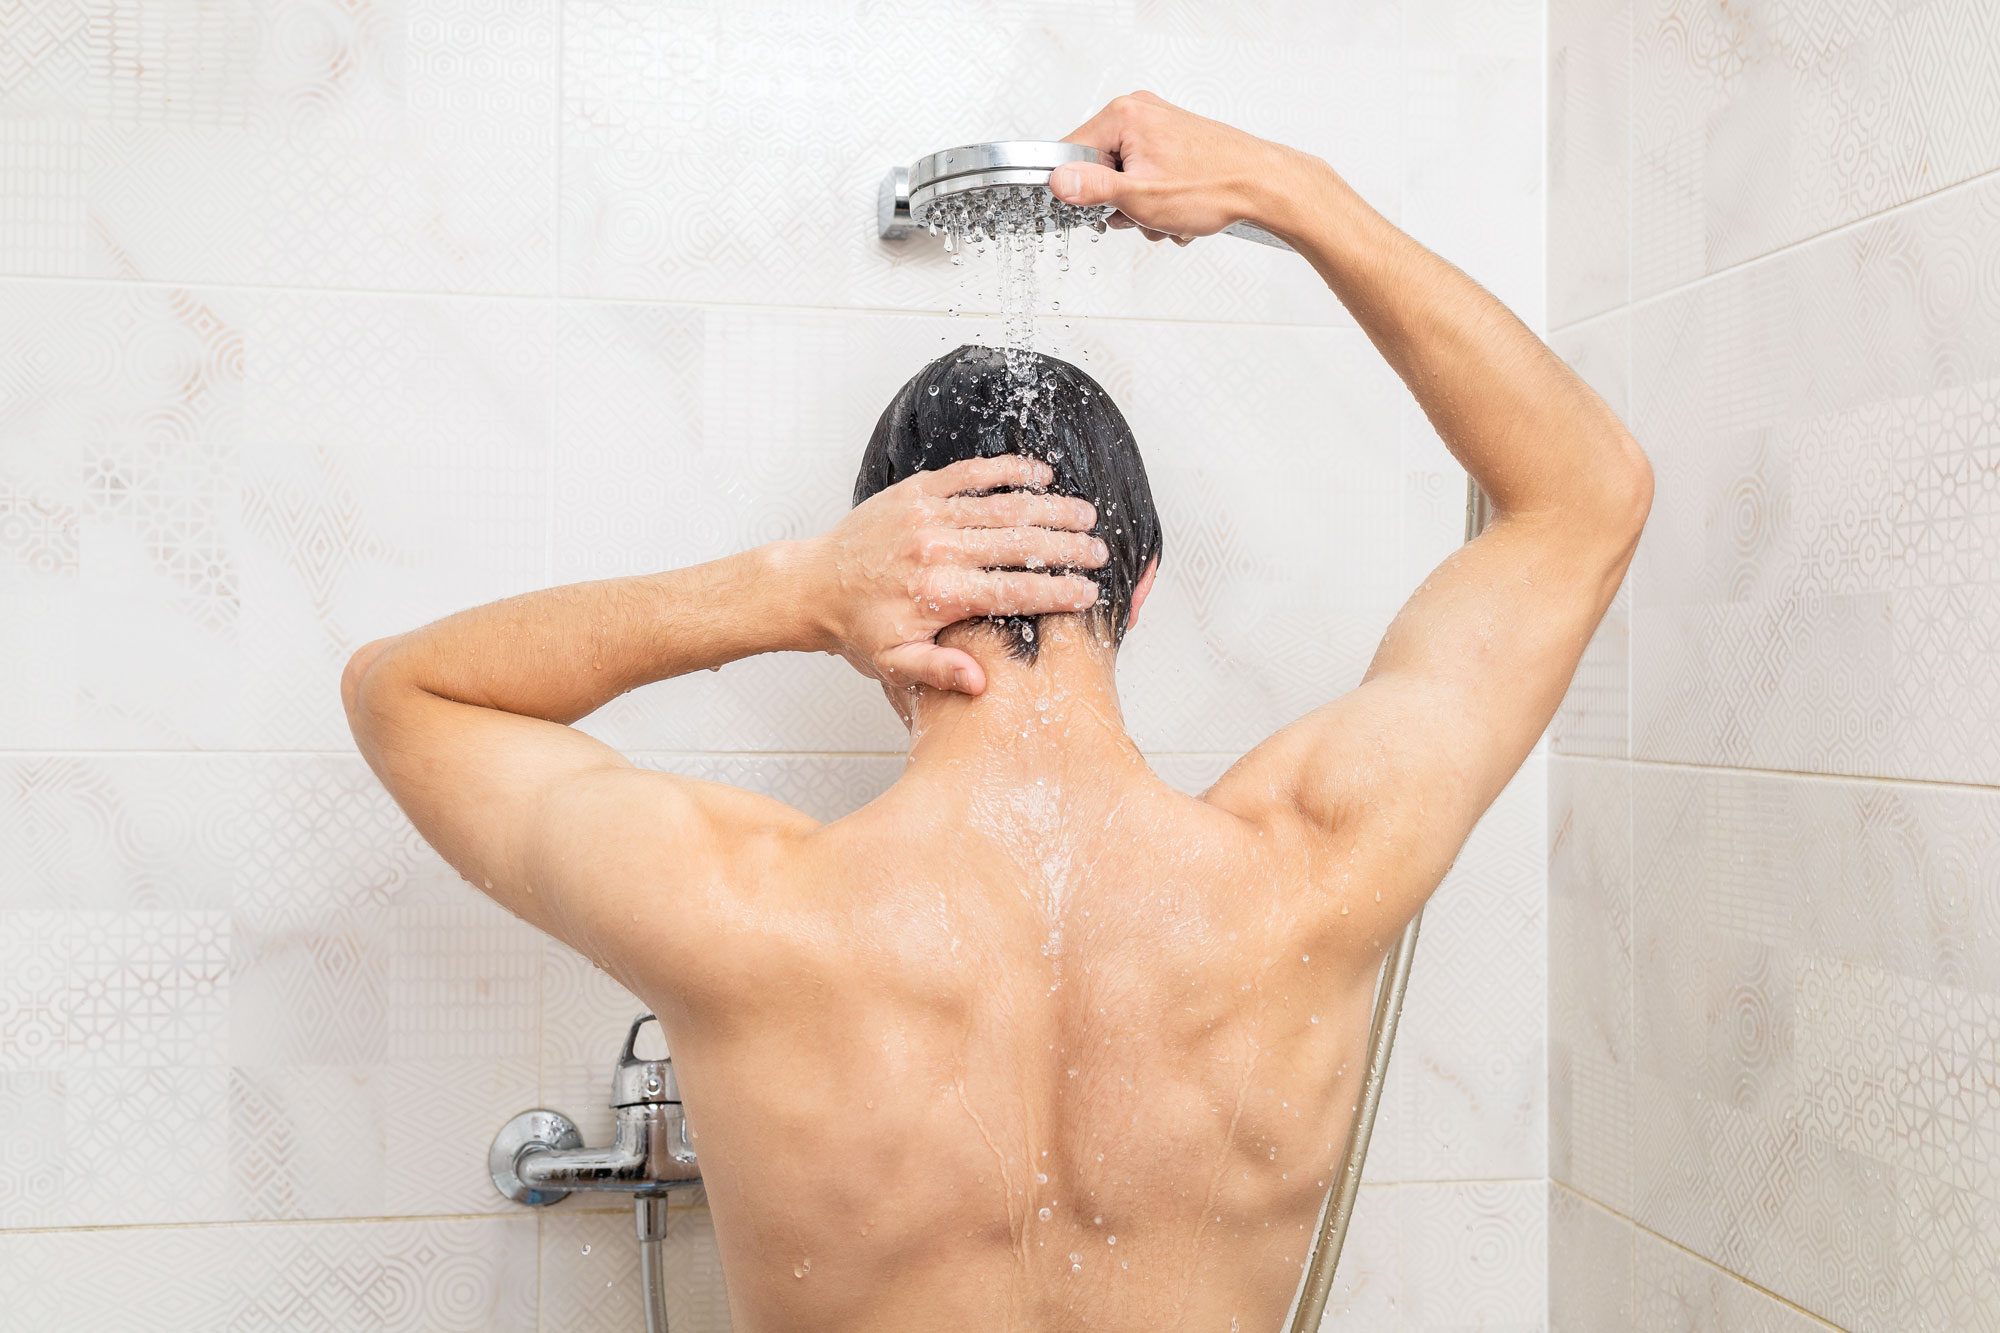 https://www.rd.com/wp-content/uploads/2011/06/Man-Taking-A-Shower-GettyImages-1603522403_KSedit.jpg